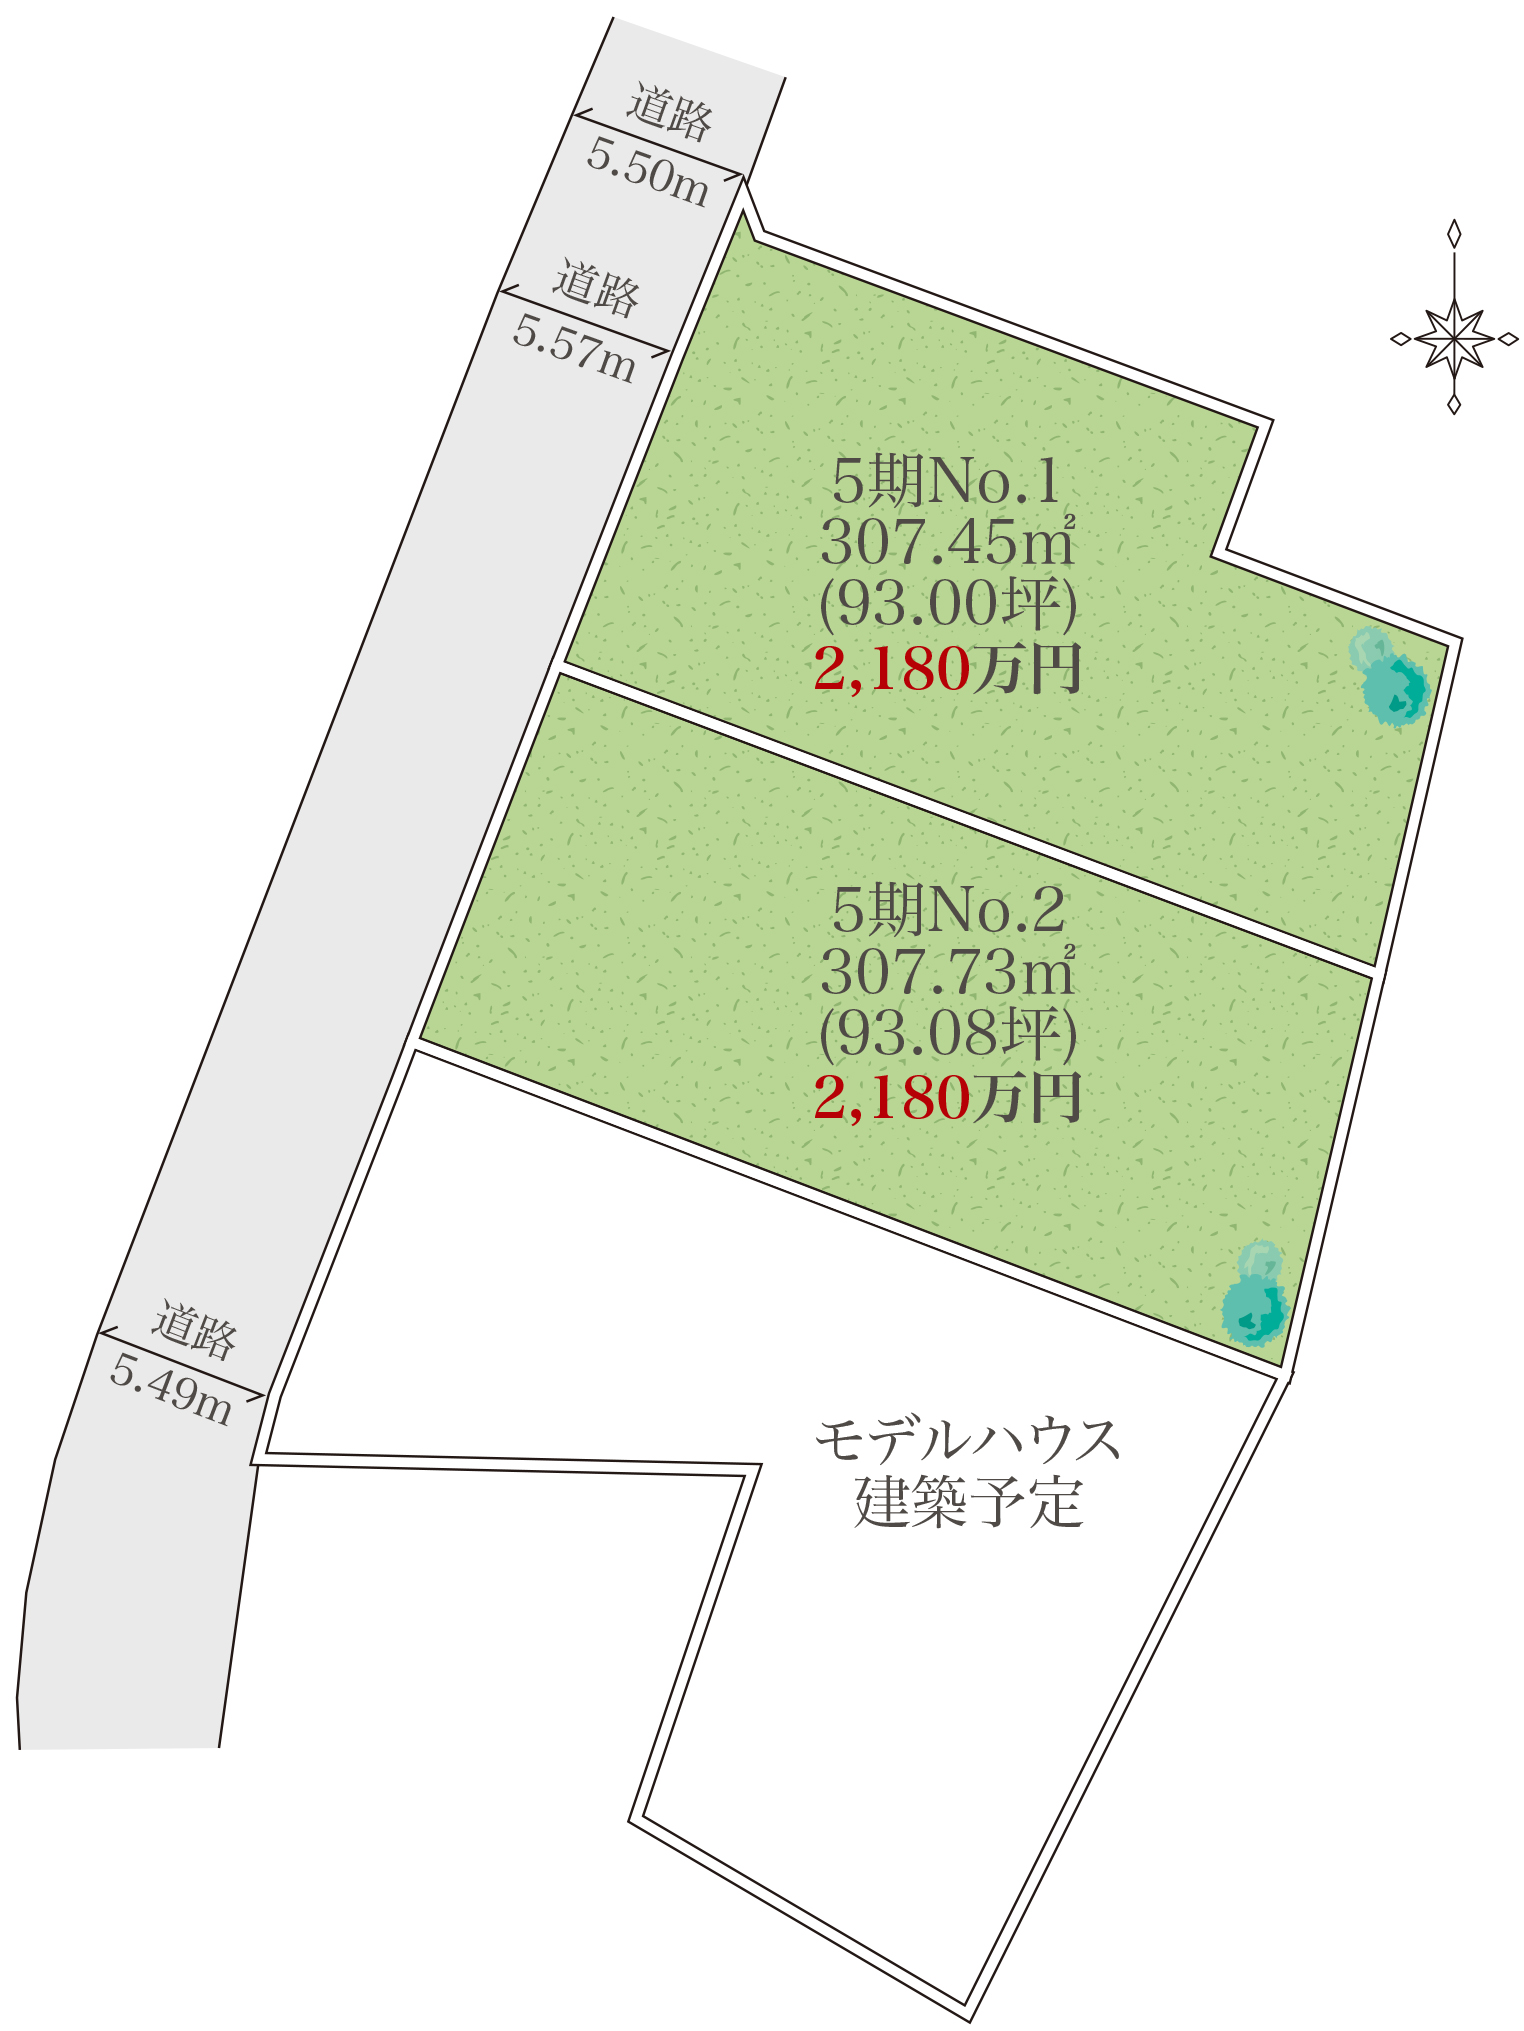 【小田原市小台全5区画開発分譲地】～敷地ゆとりの300㎡以上（90坪以上）の緑住タイプ分譲地～